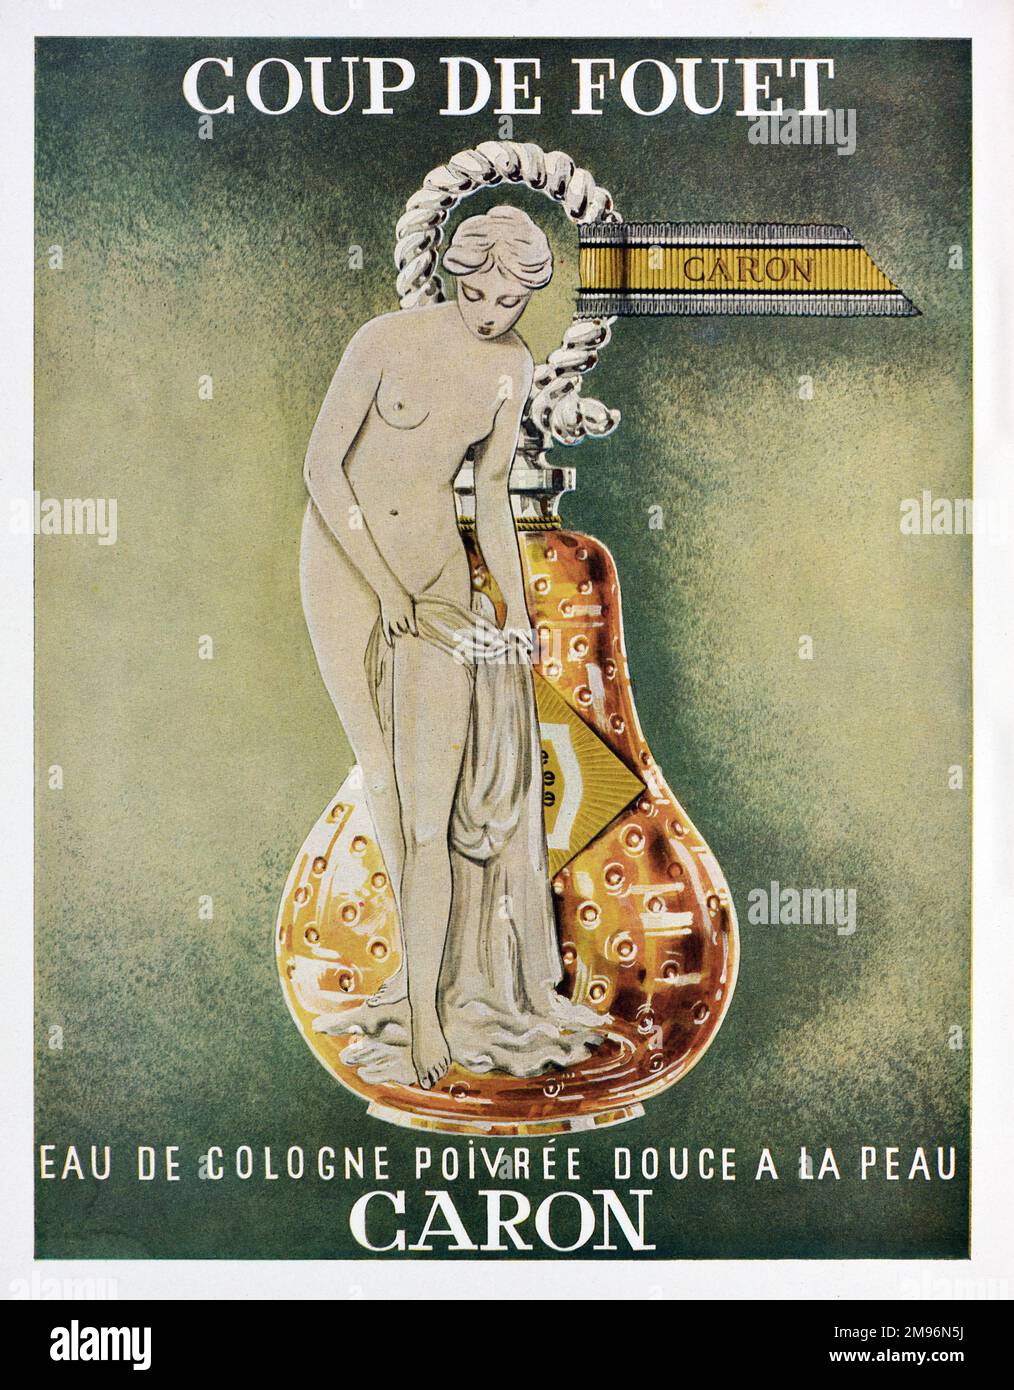 Vintage o antiguo anuncio, publicidad, publicidad o ilustración para Caron Cosmetics anuncio 1957. Ilustrado con botella en forma de pera y mujer desnuda o joven desnuda Foto de stock